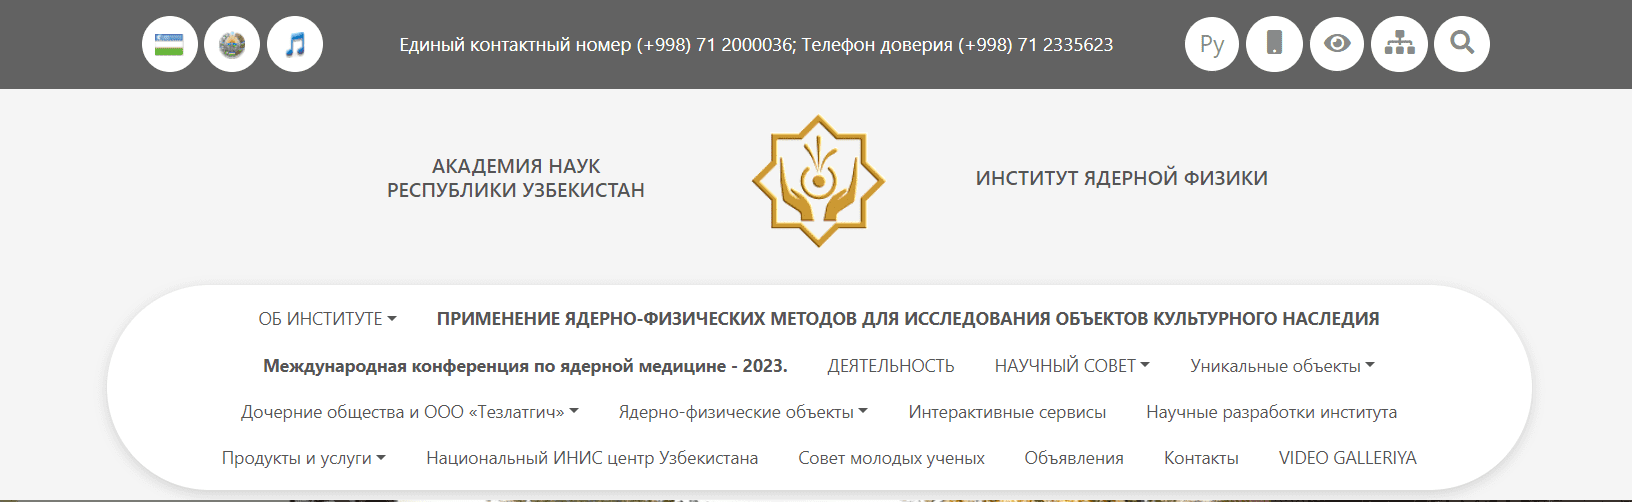 Институт ядерной физики АН РУ (inp.uz) - официальный сайт